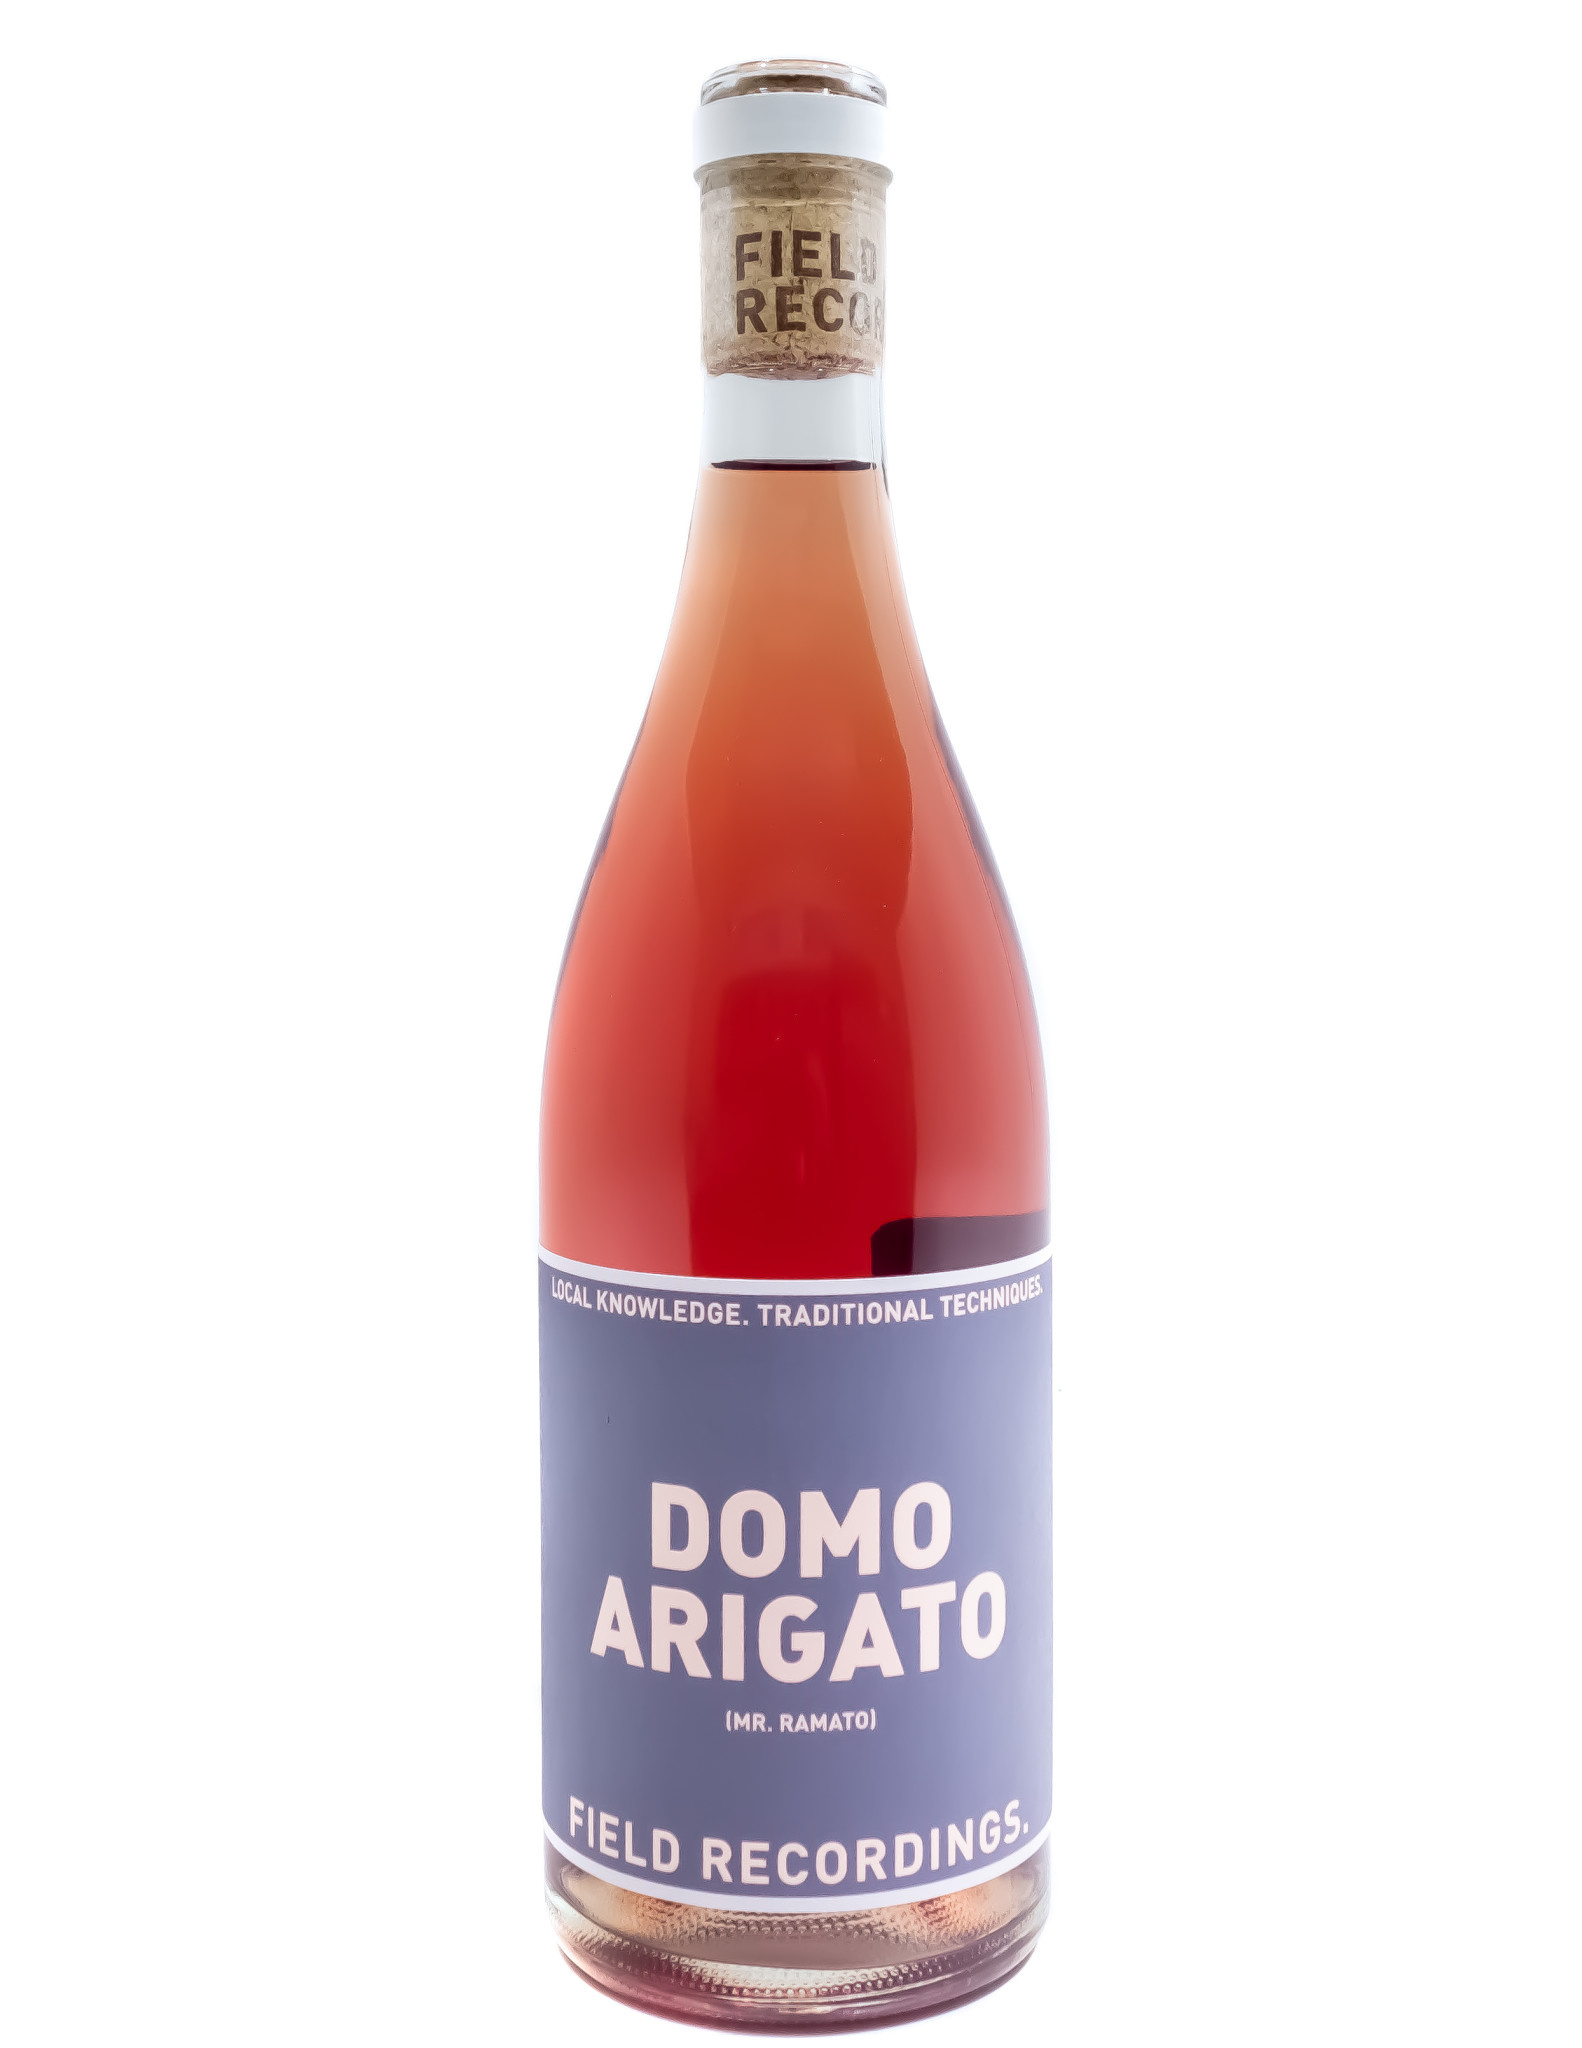 Domo arigato wine